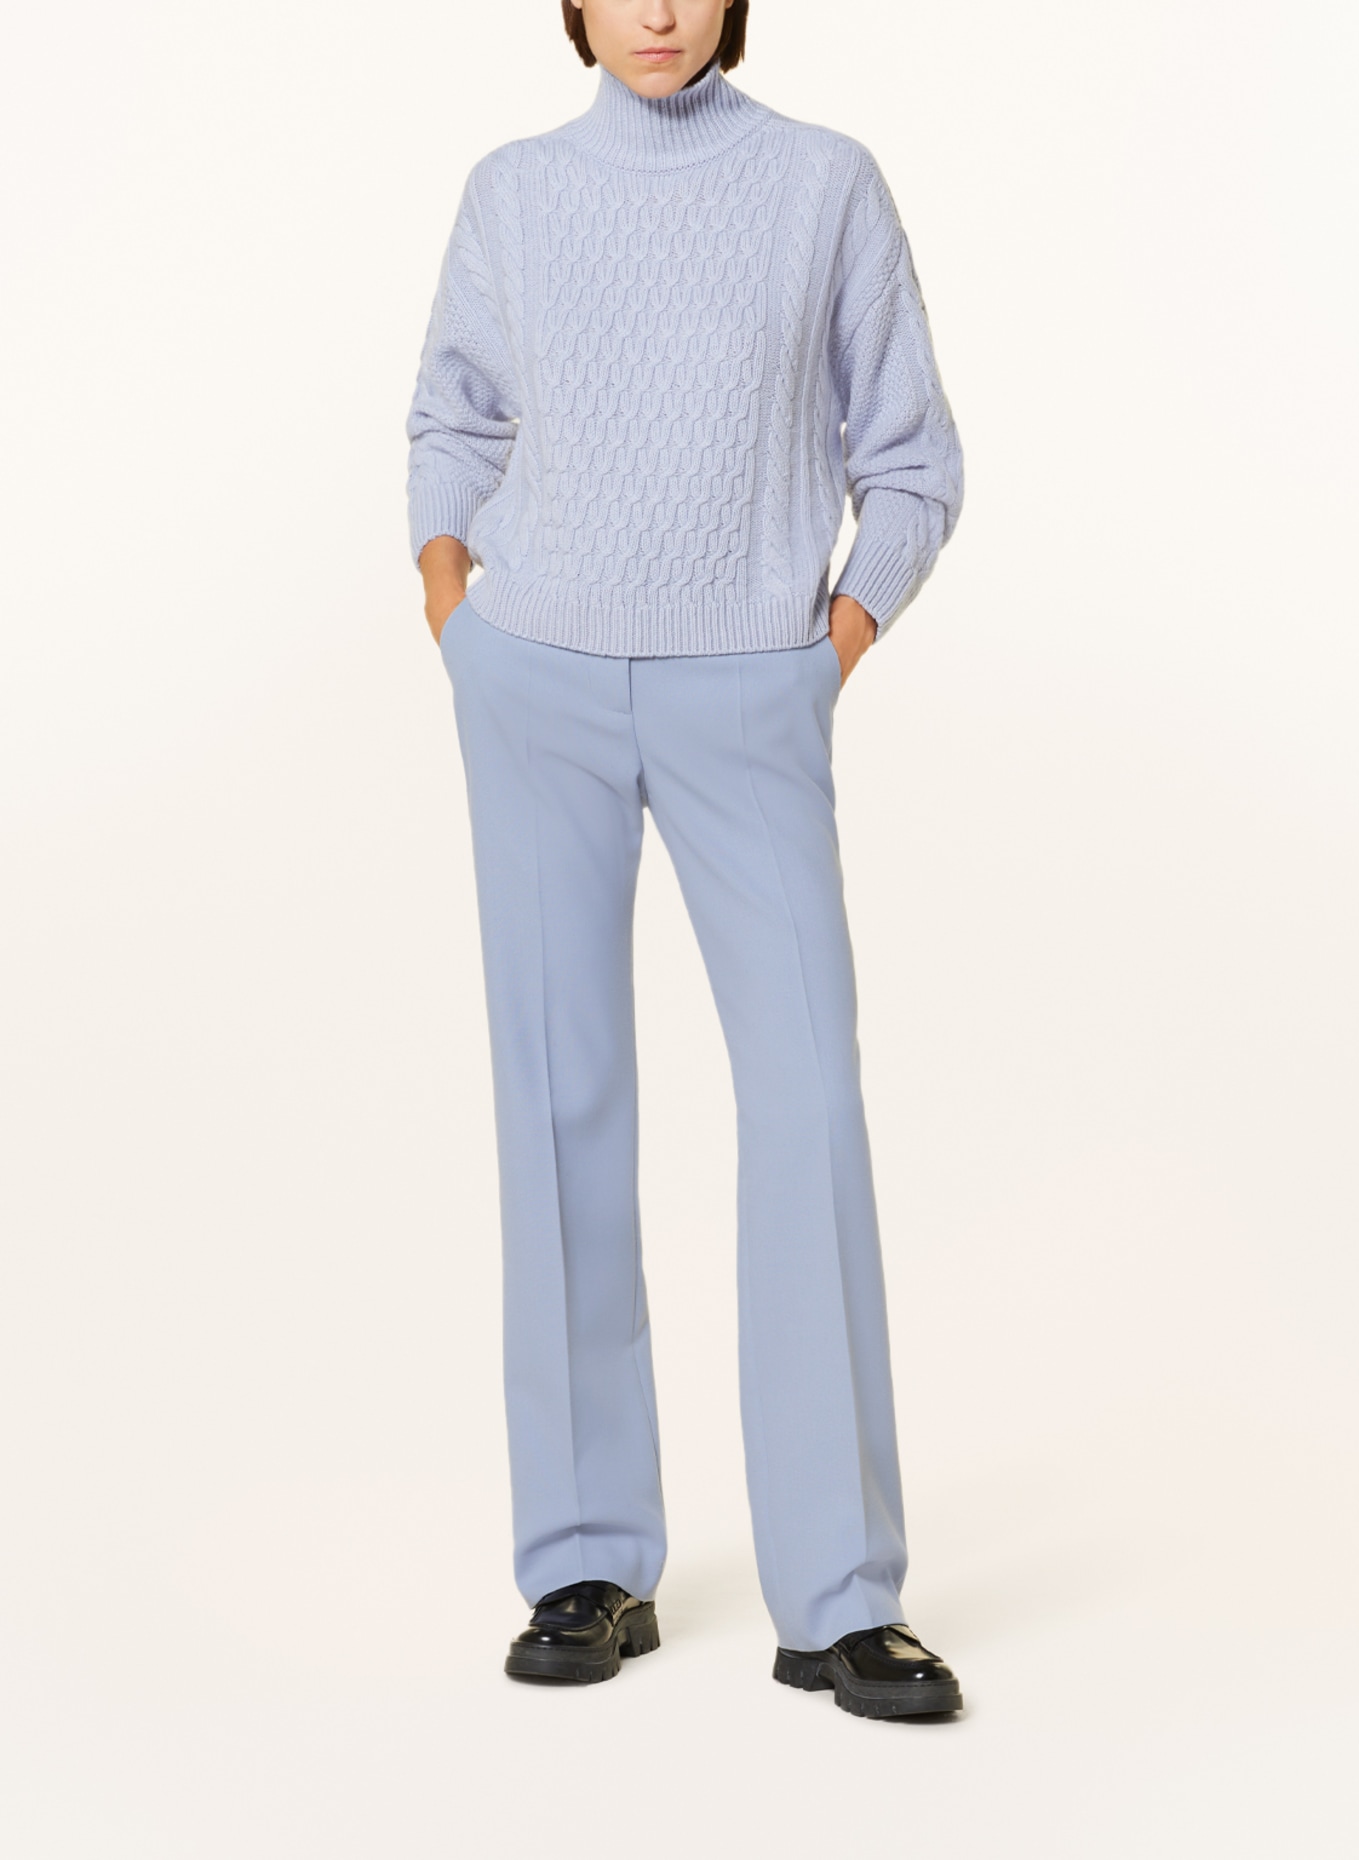 ANTONELLI firenze Sweater, Color: LIGHT BLUE (Image 2)